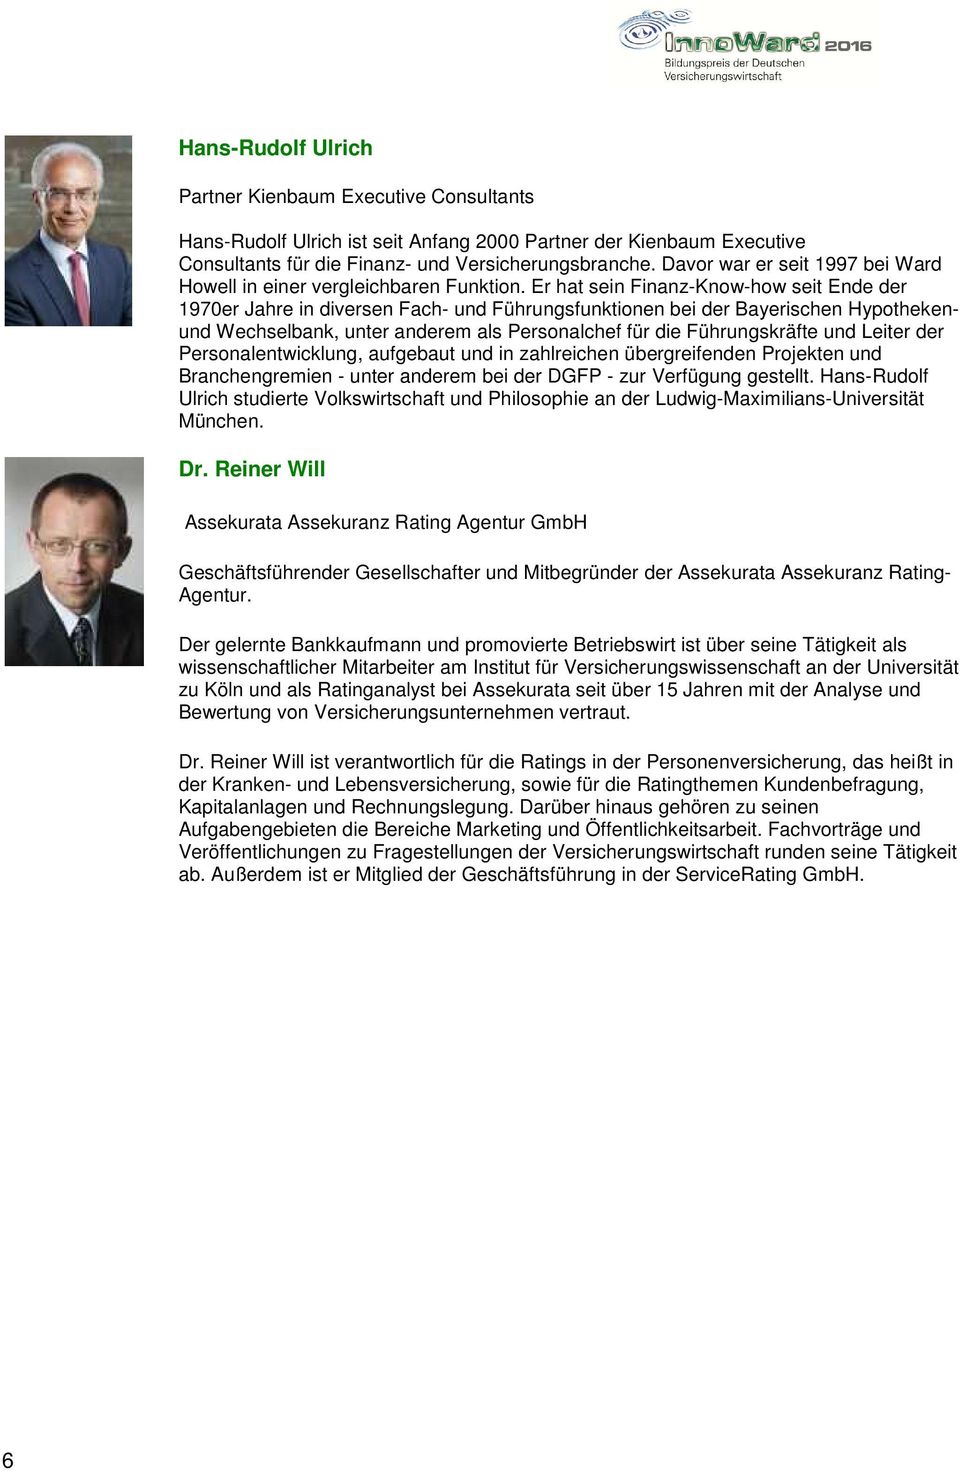 Er hat sein Finanz-Know-how seit Ende der 1970er Jahre in diversen Fach- und Führungsfunktionen bei der Bayerischen Hypothekenund Wechselbank, unter anderem als Personalchef für die Führungskräfte